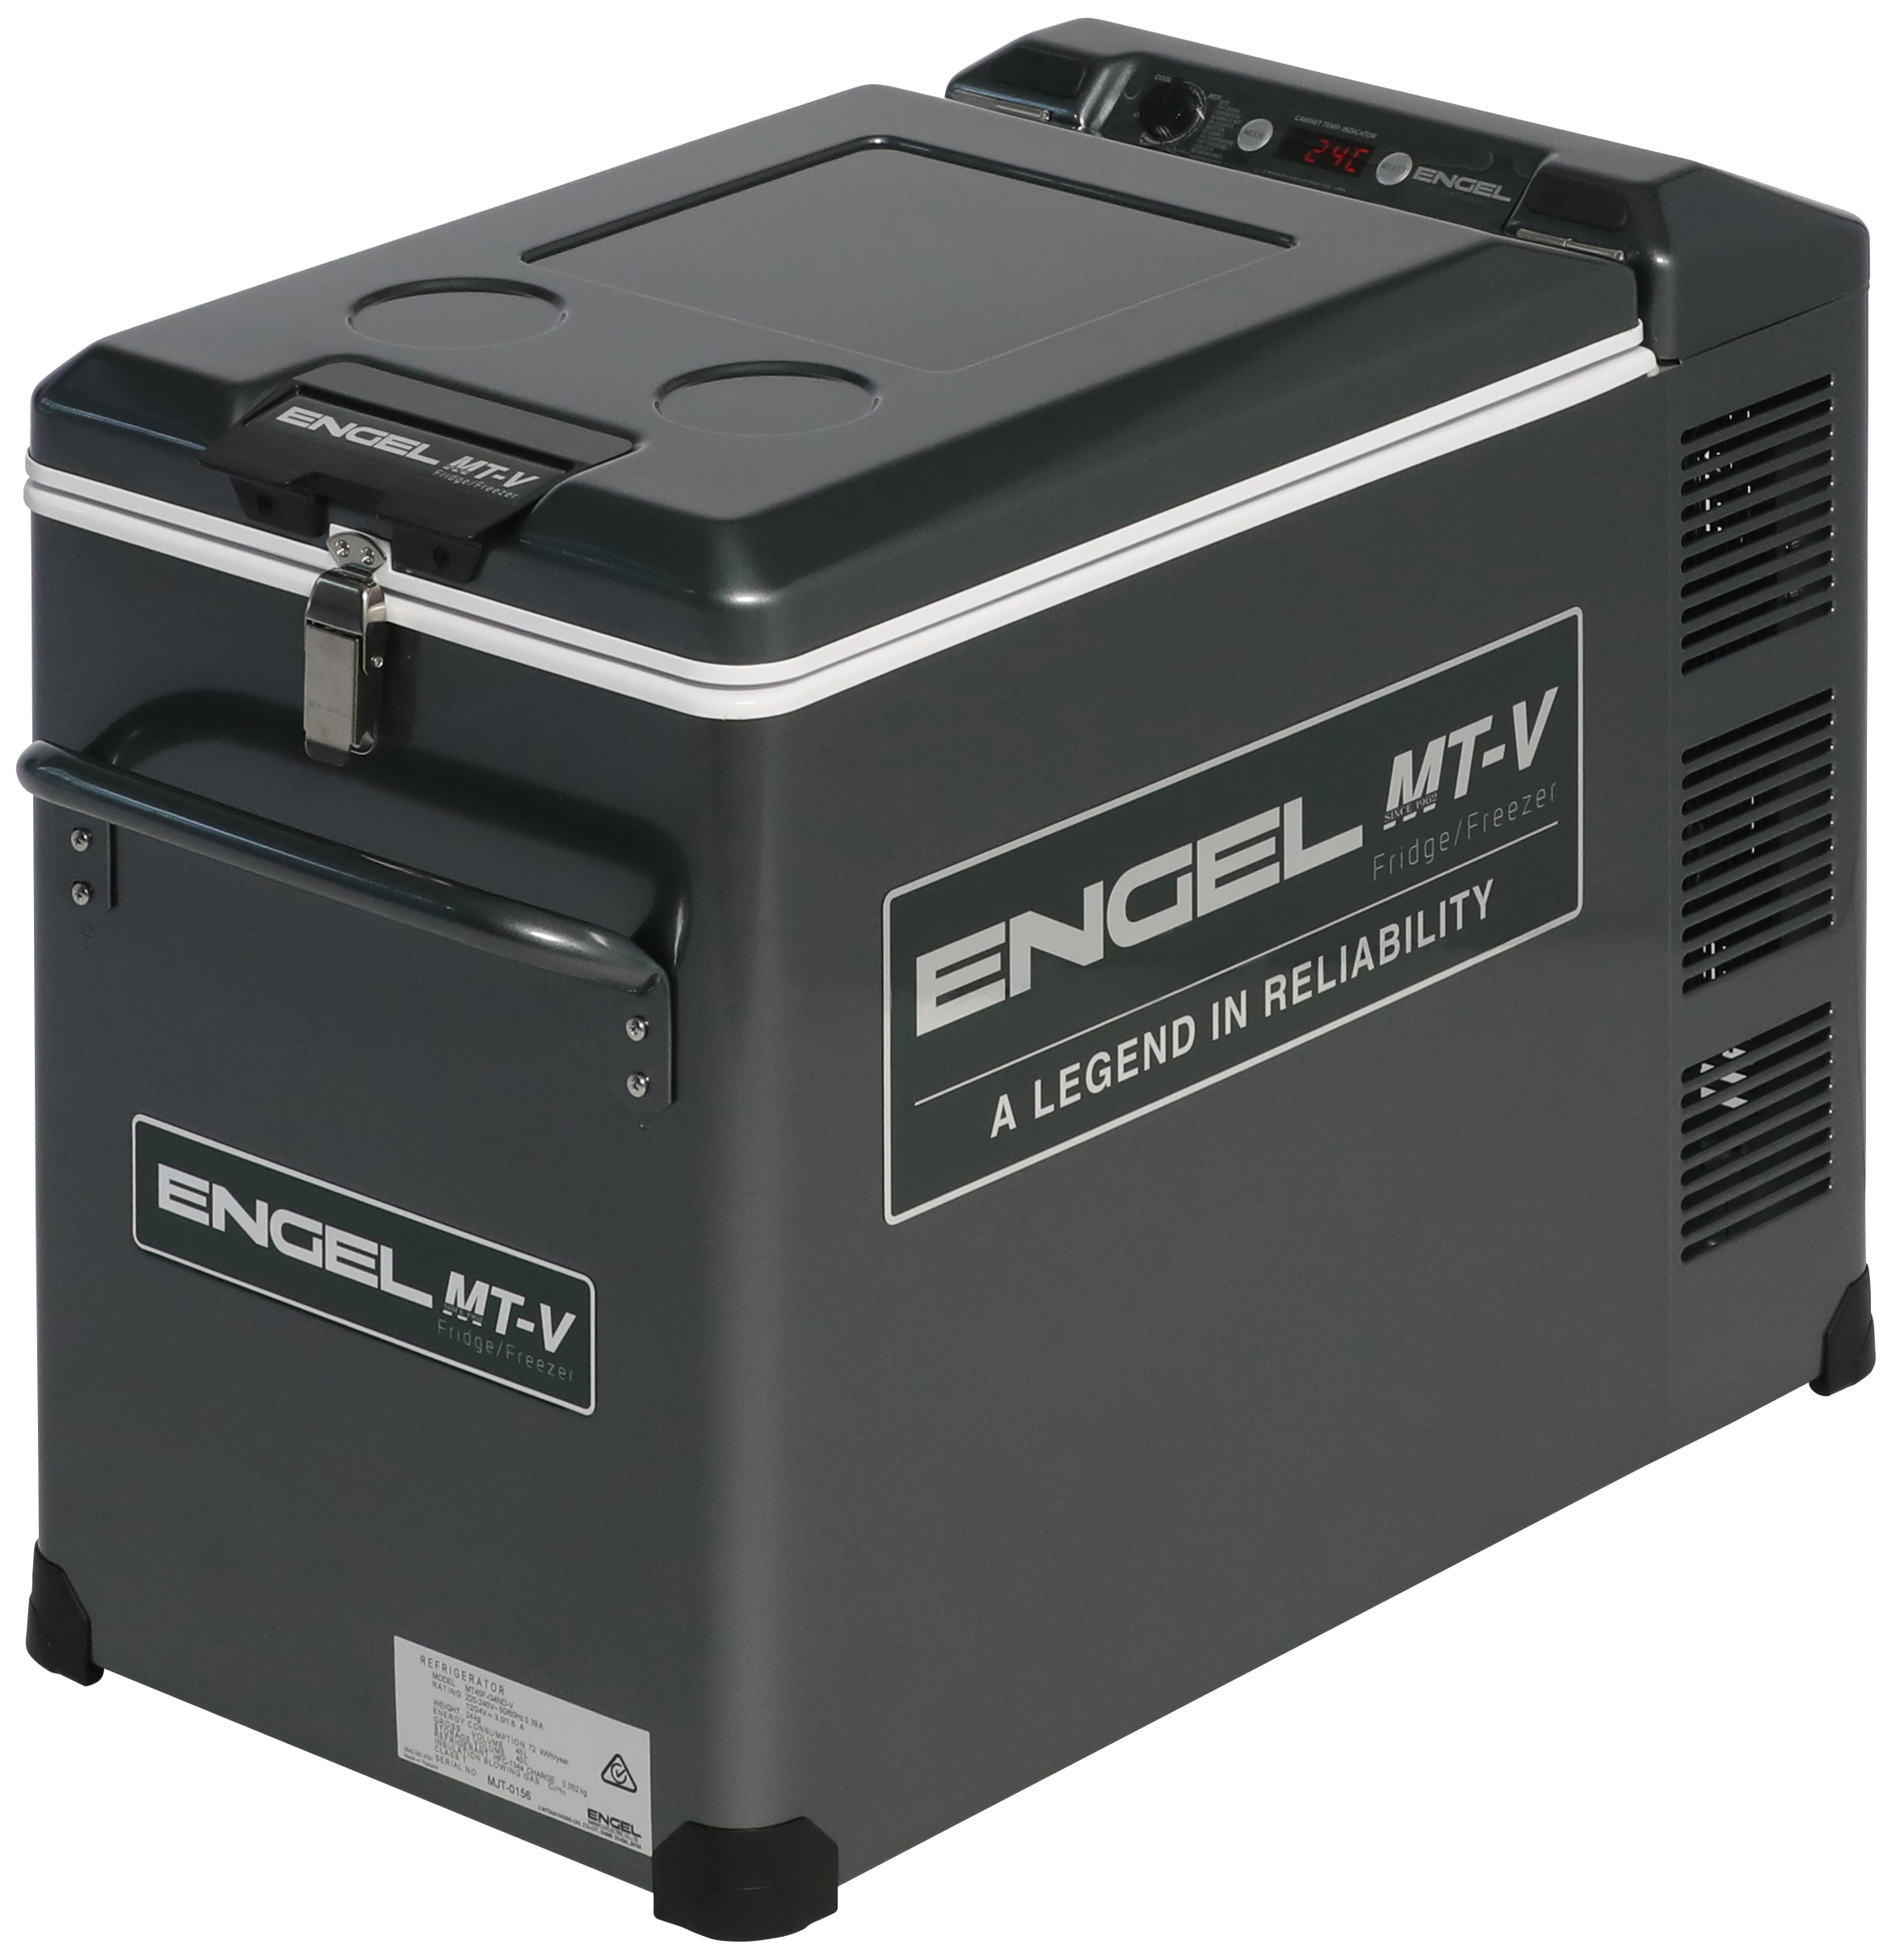 Réfrigérateur Engel MT45 Série V